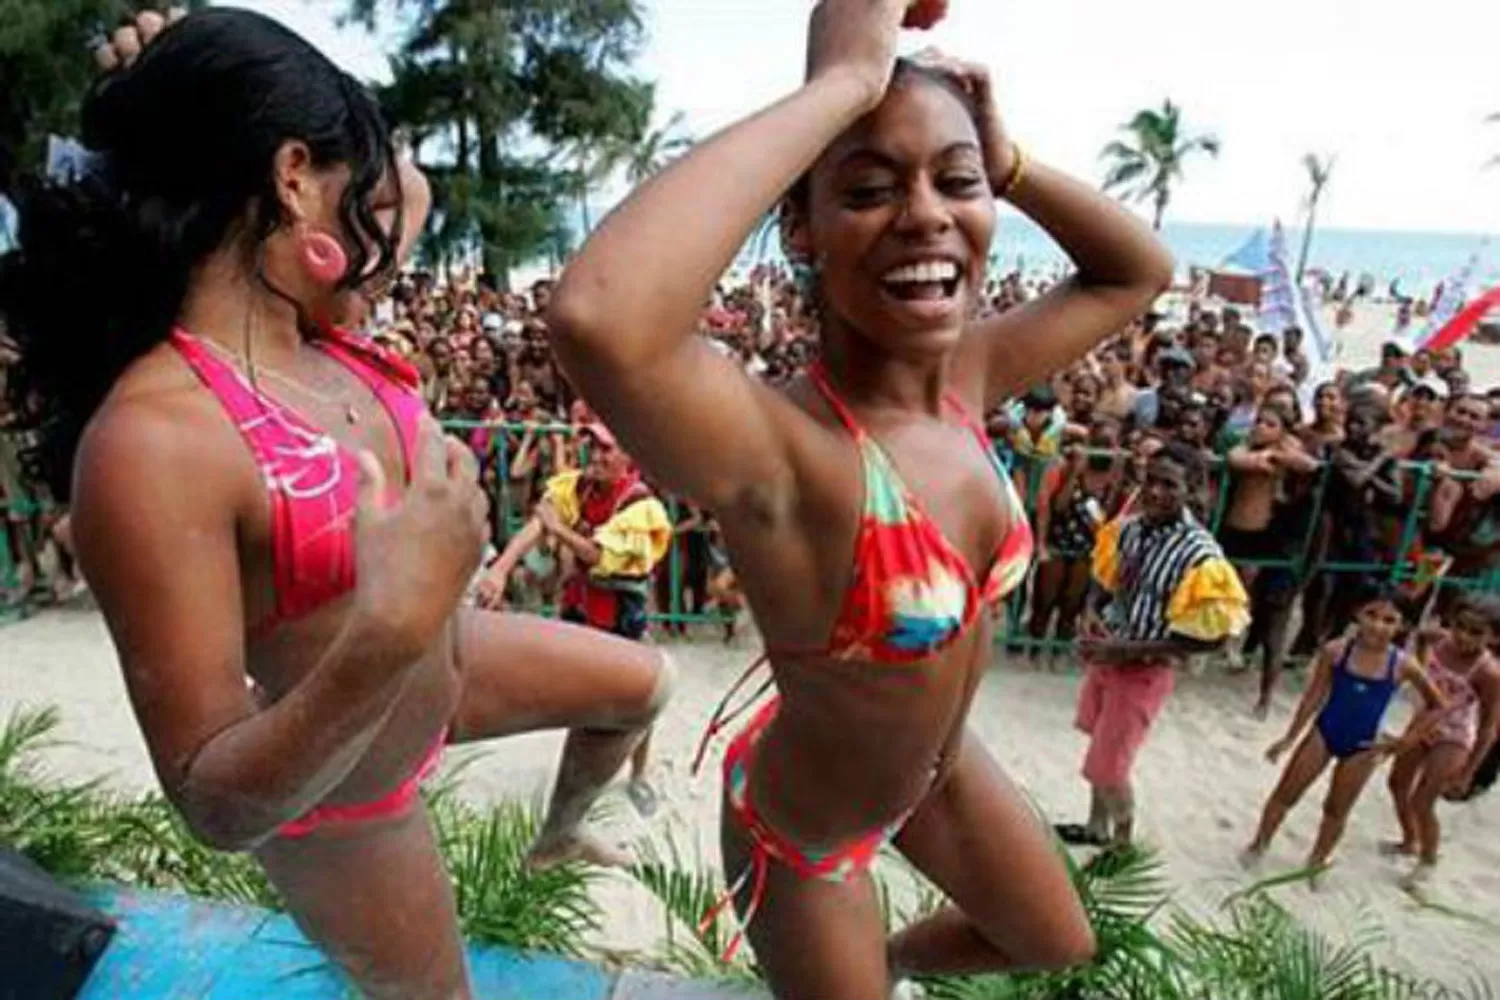 Quieren prohibir el reggaetón en Cuba por considerarlo peligroso y misógino